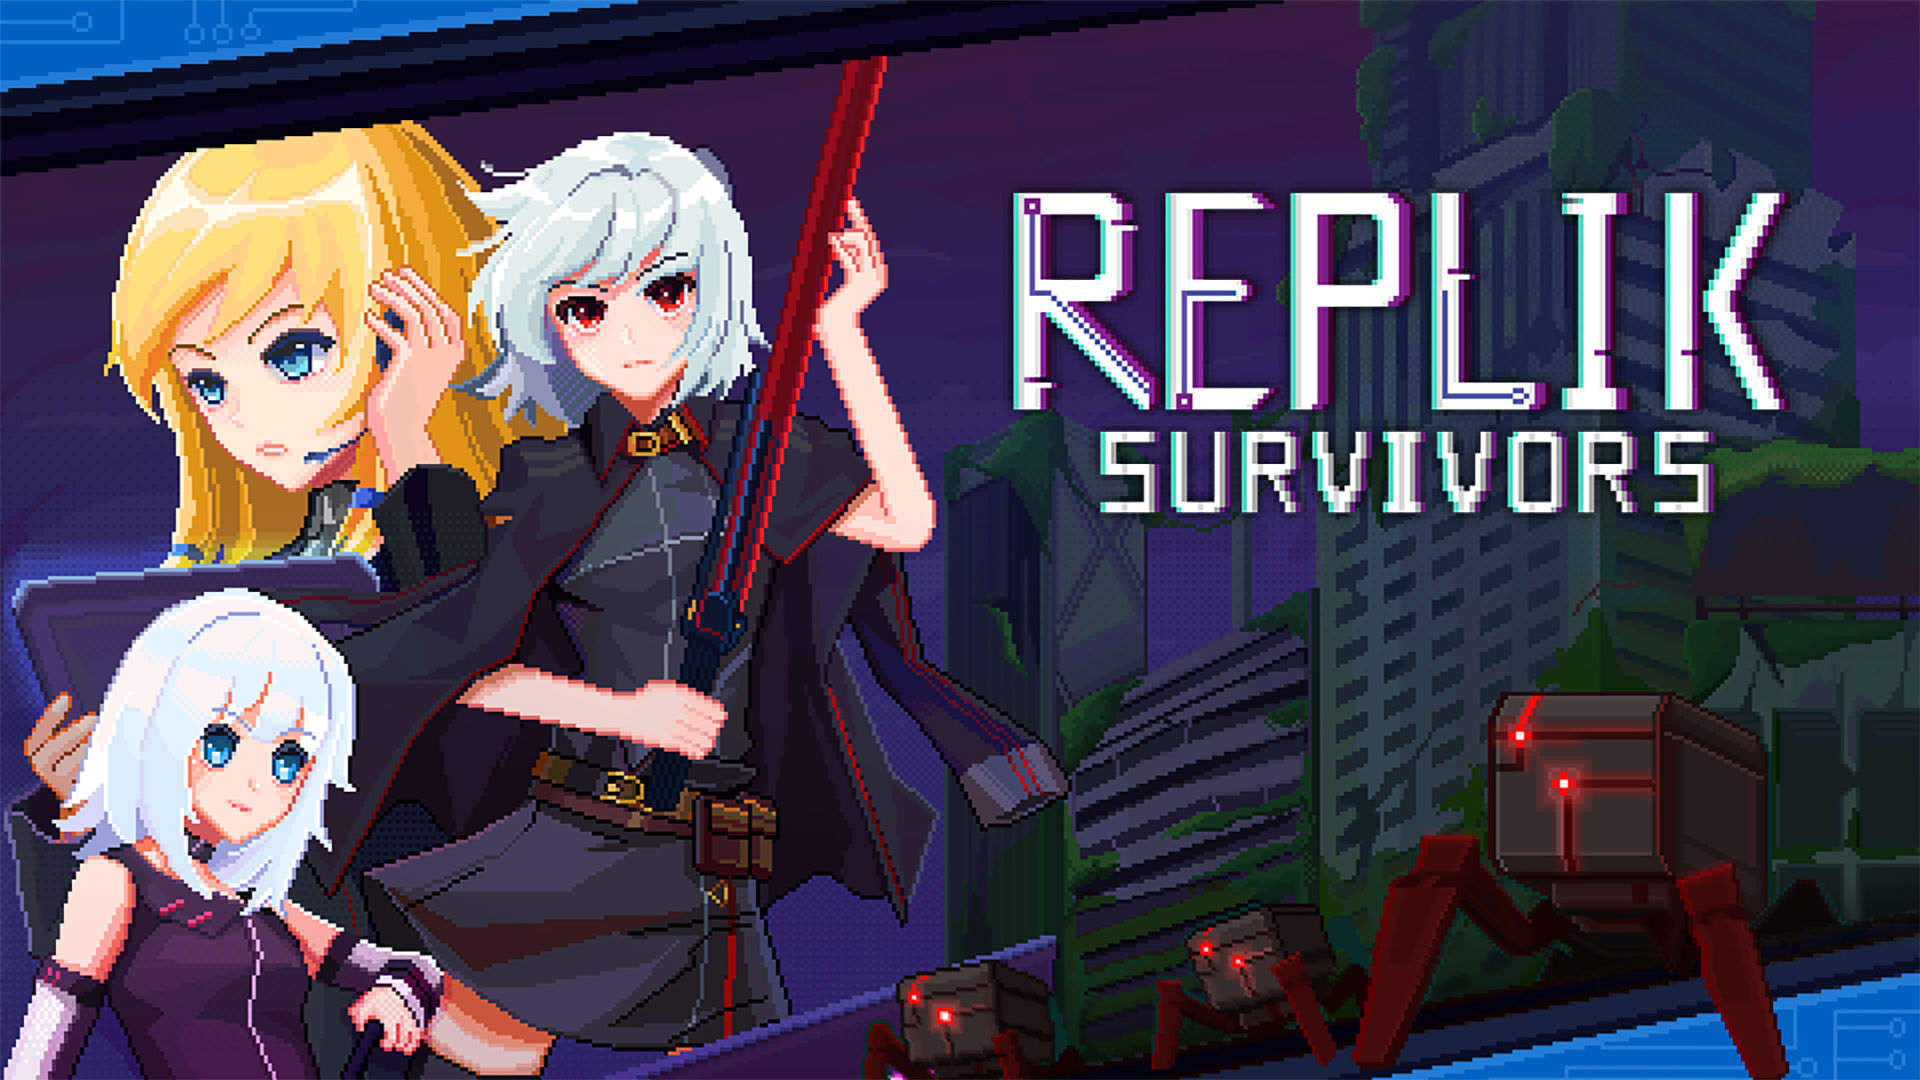 Replik Survivors